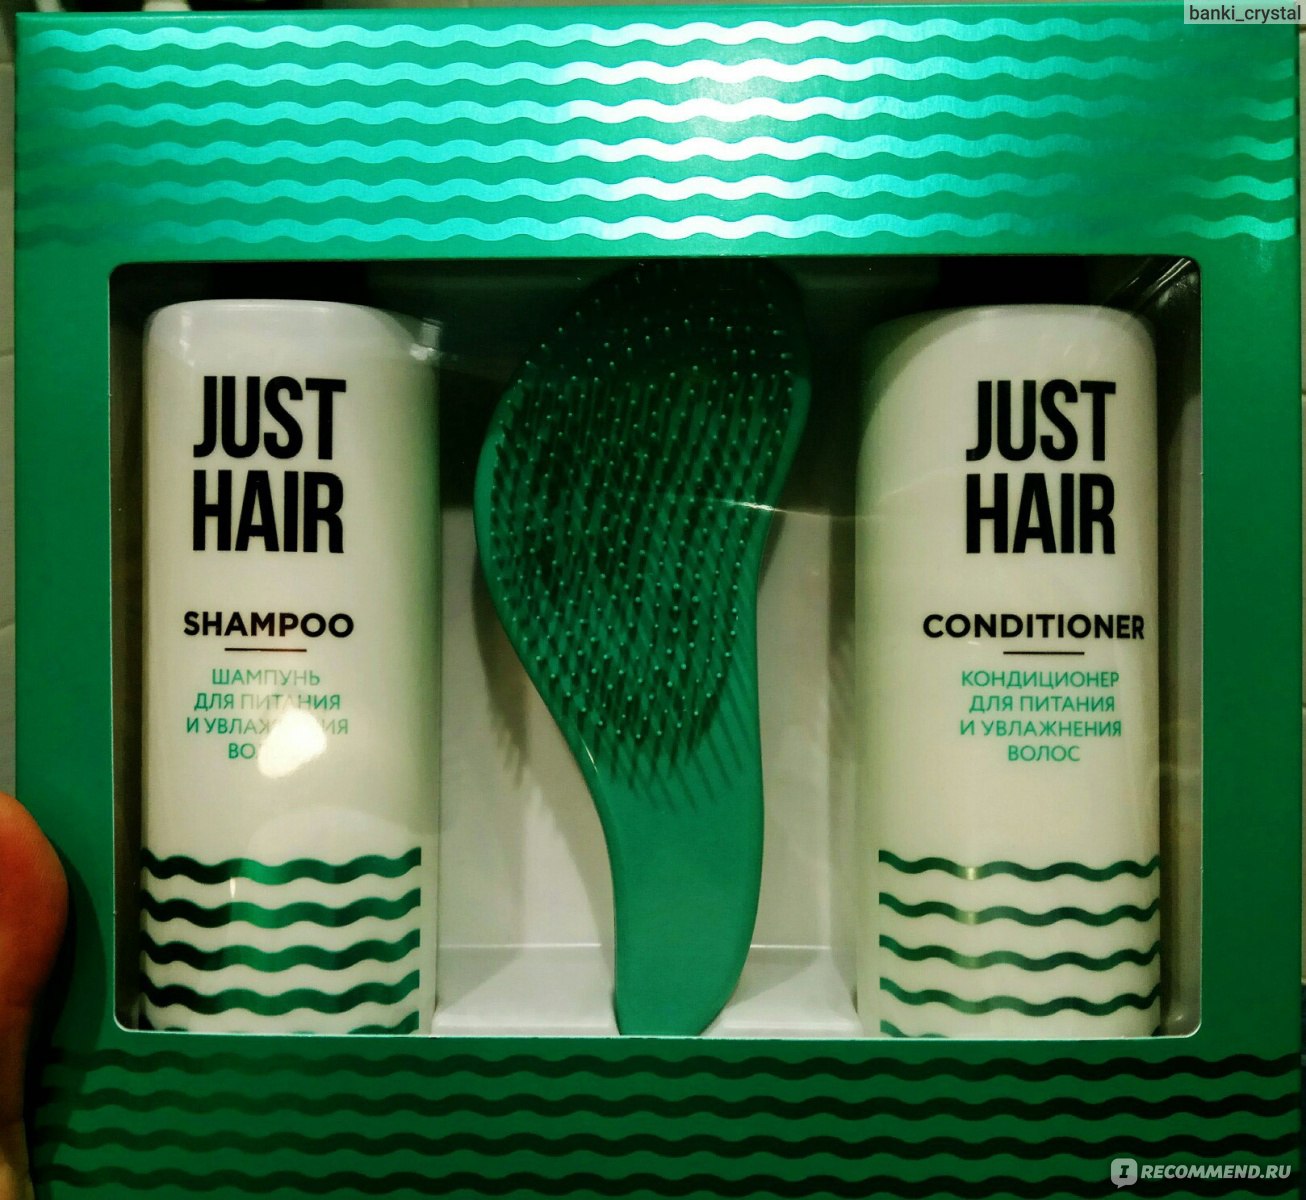 Just hair кондиционер для питания и увлажнения волос